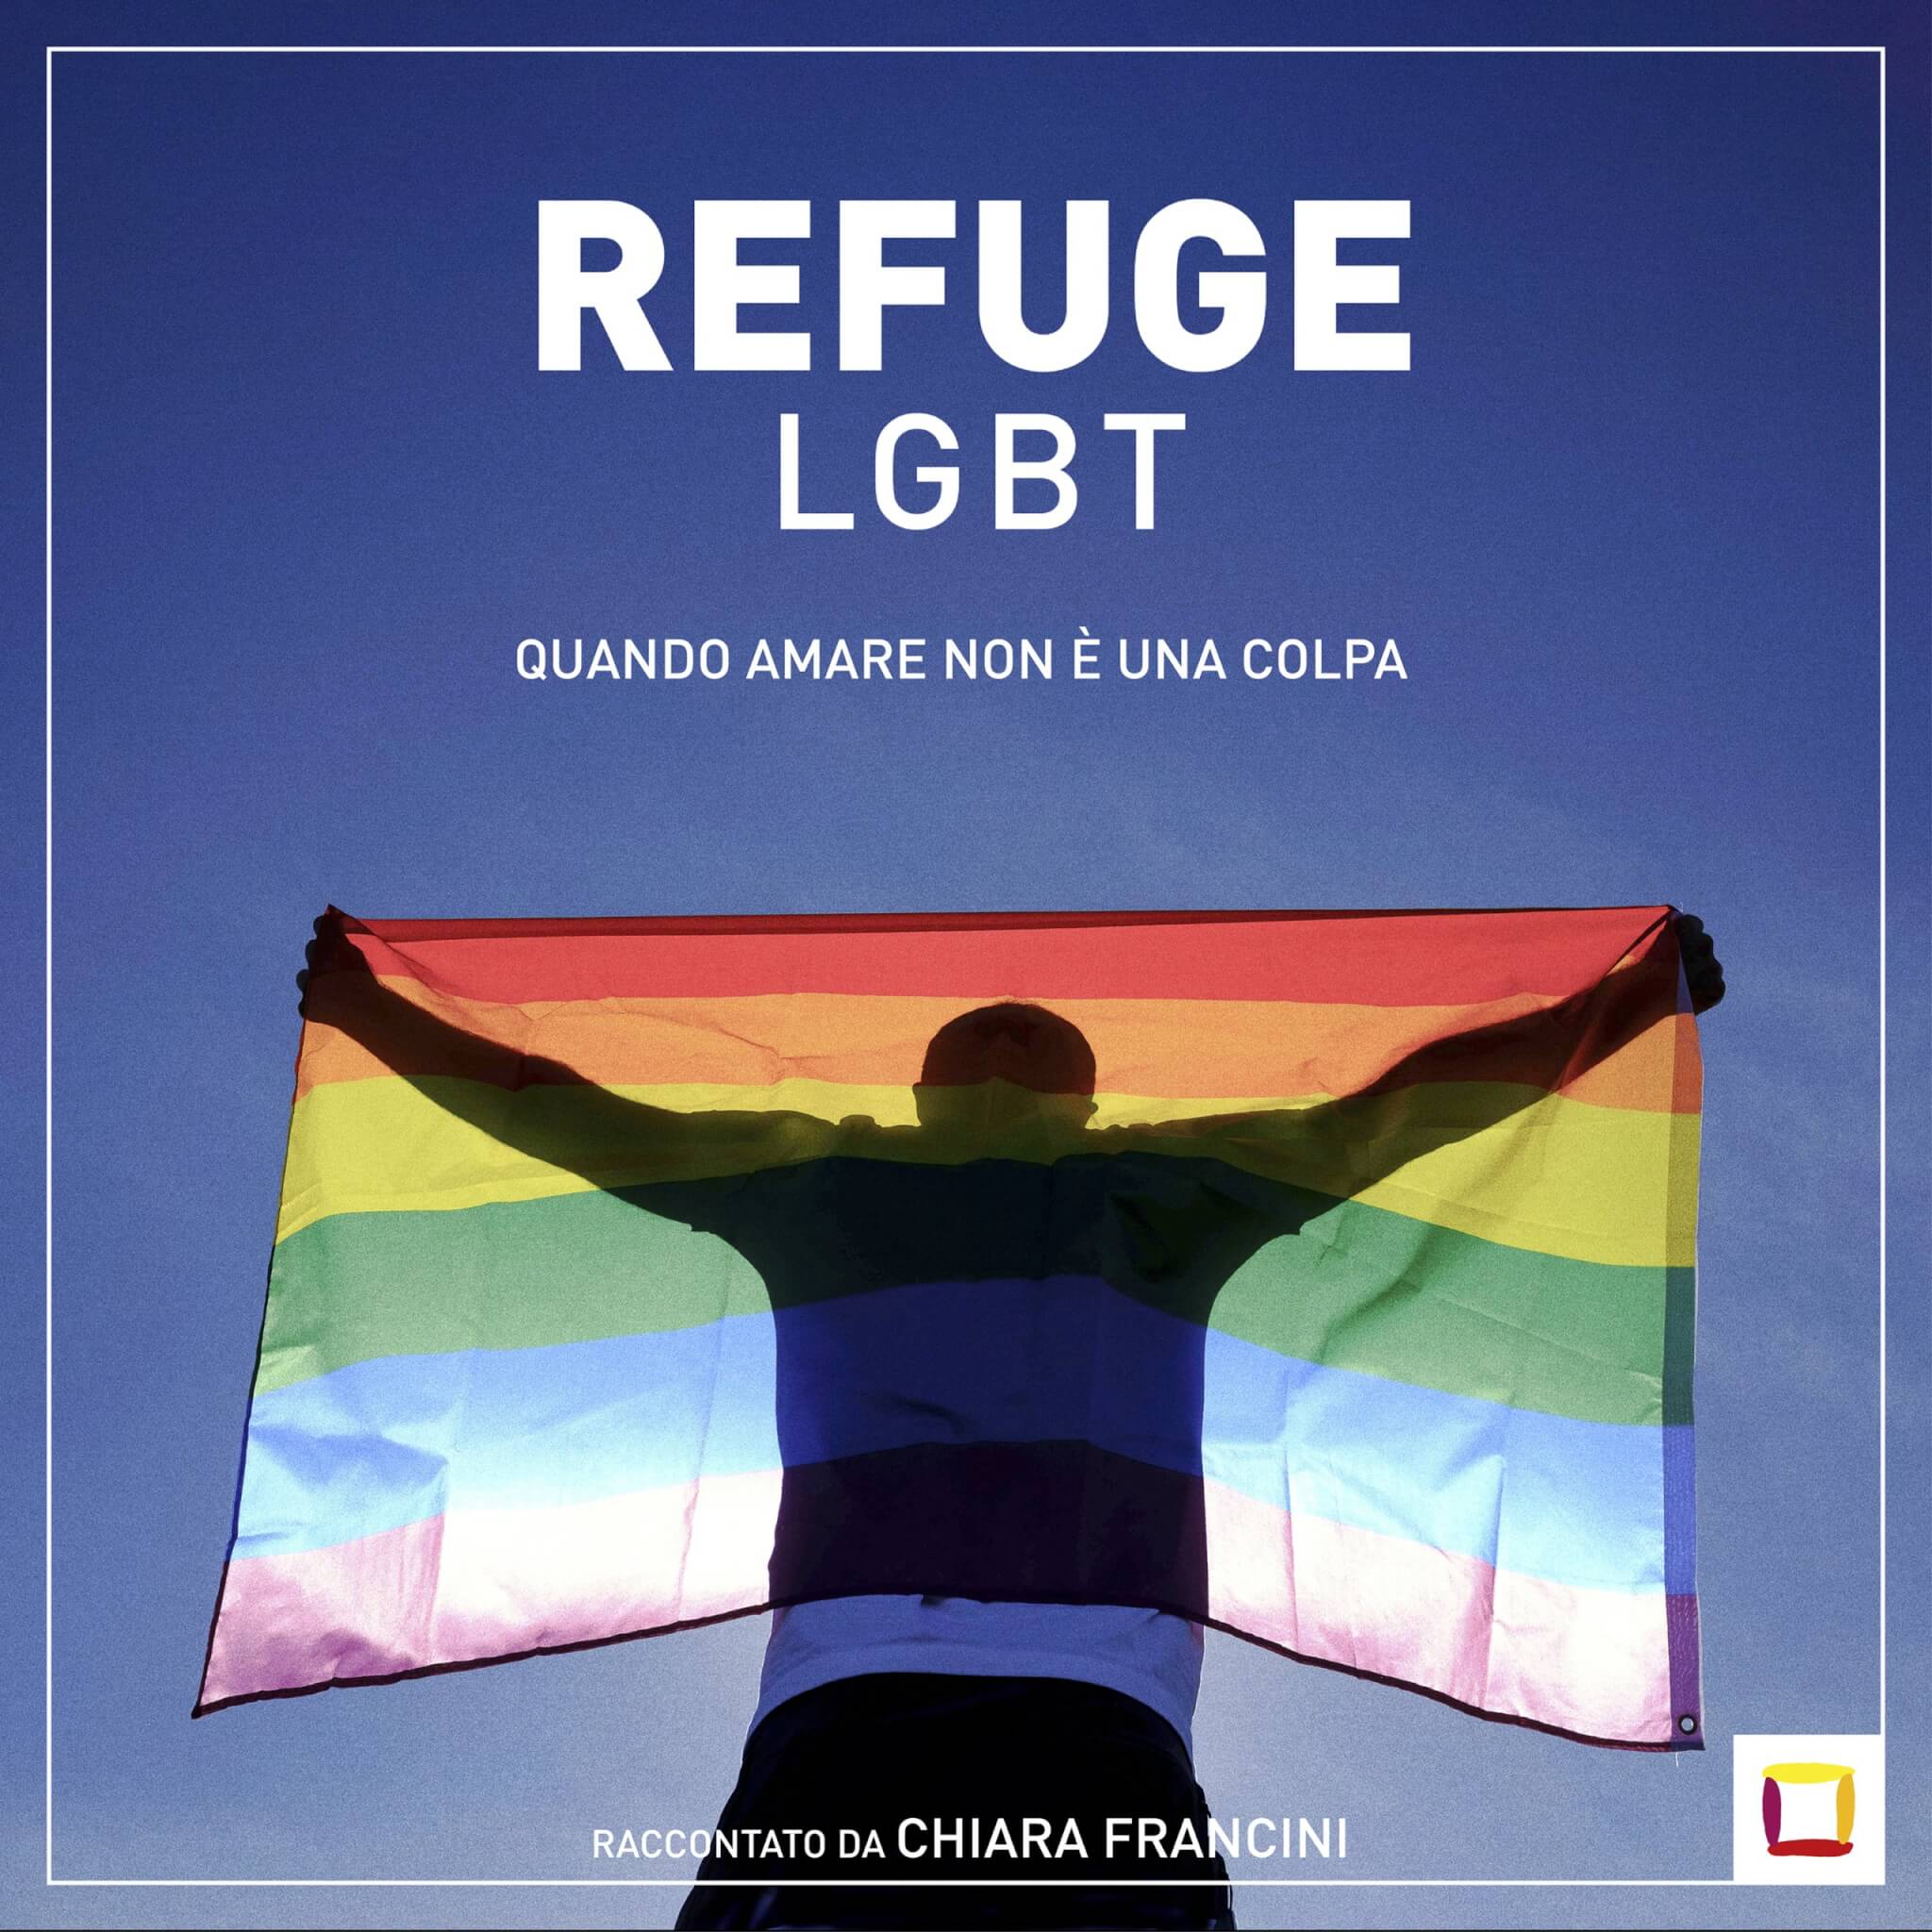 Chiara Francini voce del podcast Refuge: "Alla ministra Roccella dico di ascoltare le storie di omobitransfobia" - INTERVISTA - LR PodCast Refuge 3000pxl scaled - Gay.it